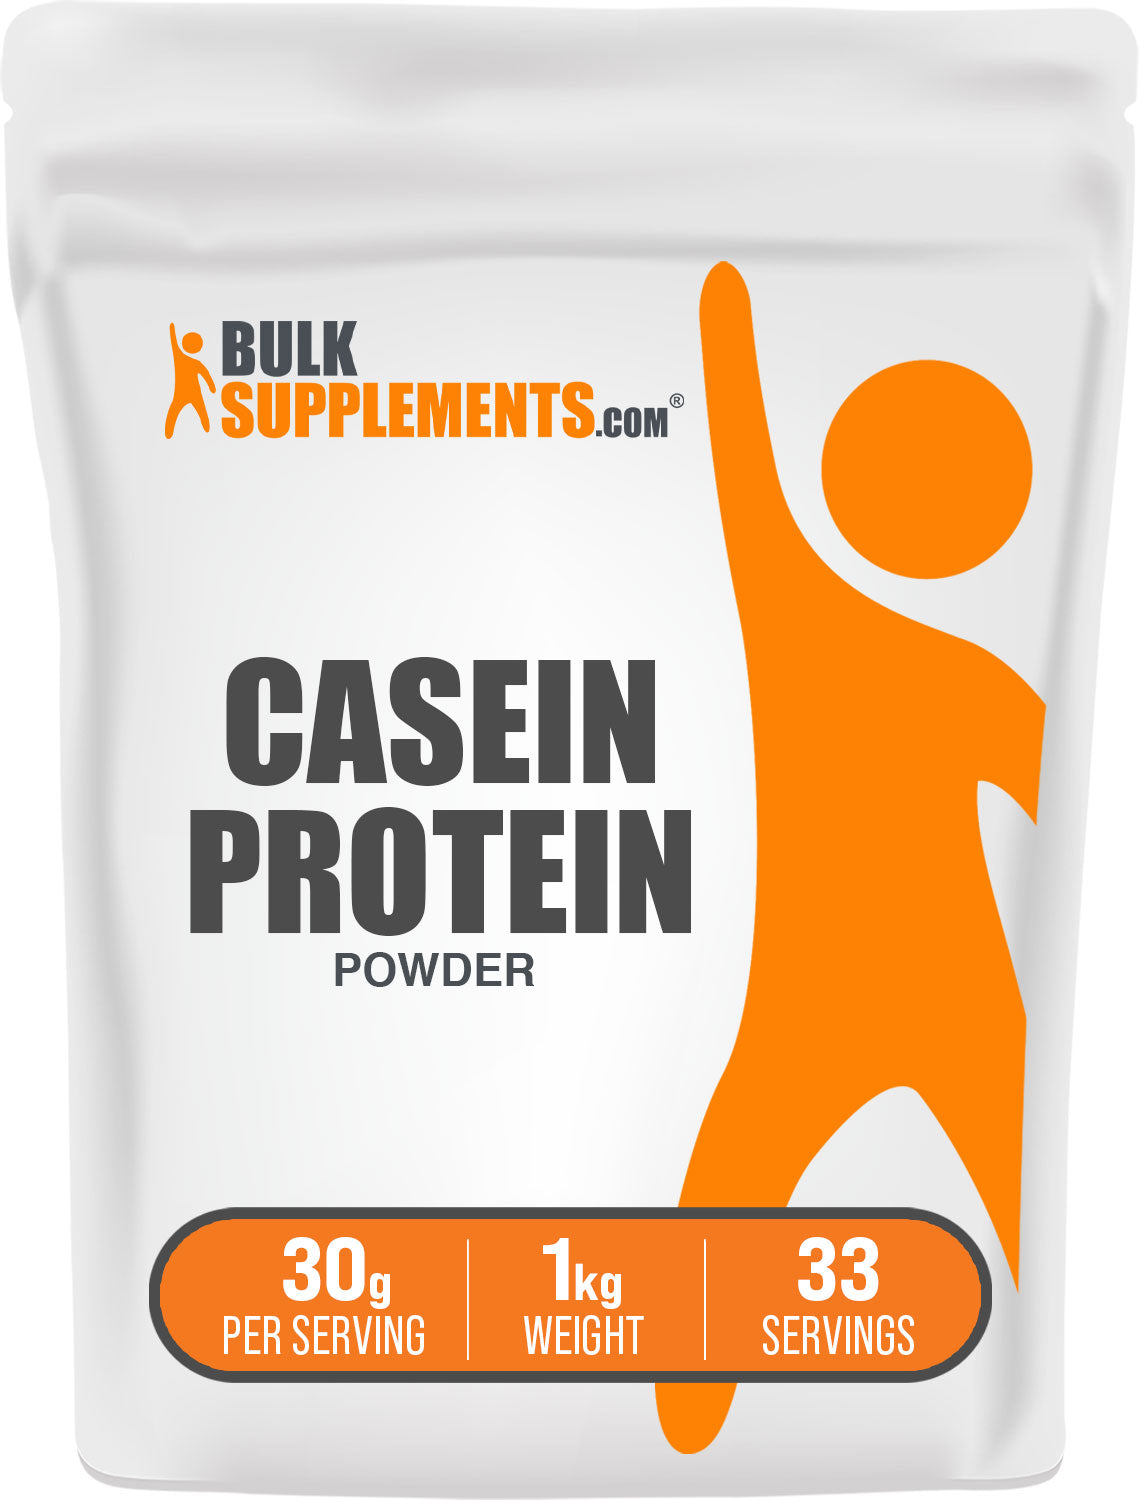 1kg casein protein powder